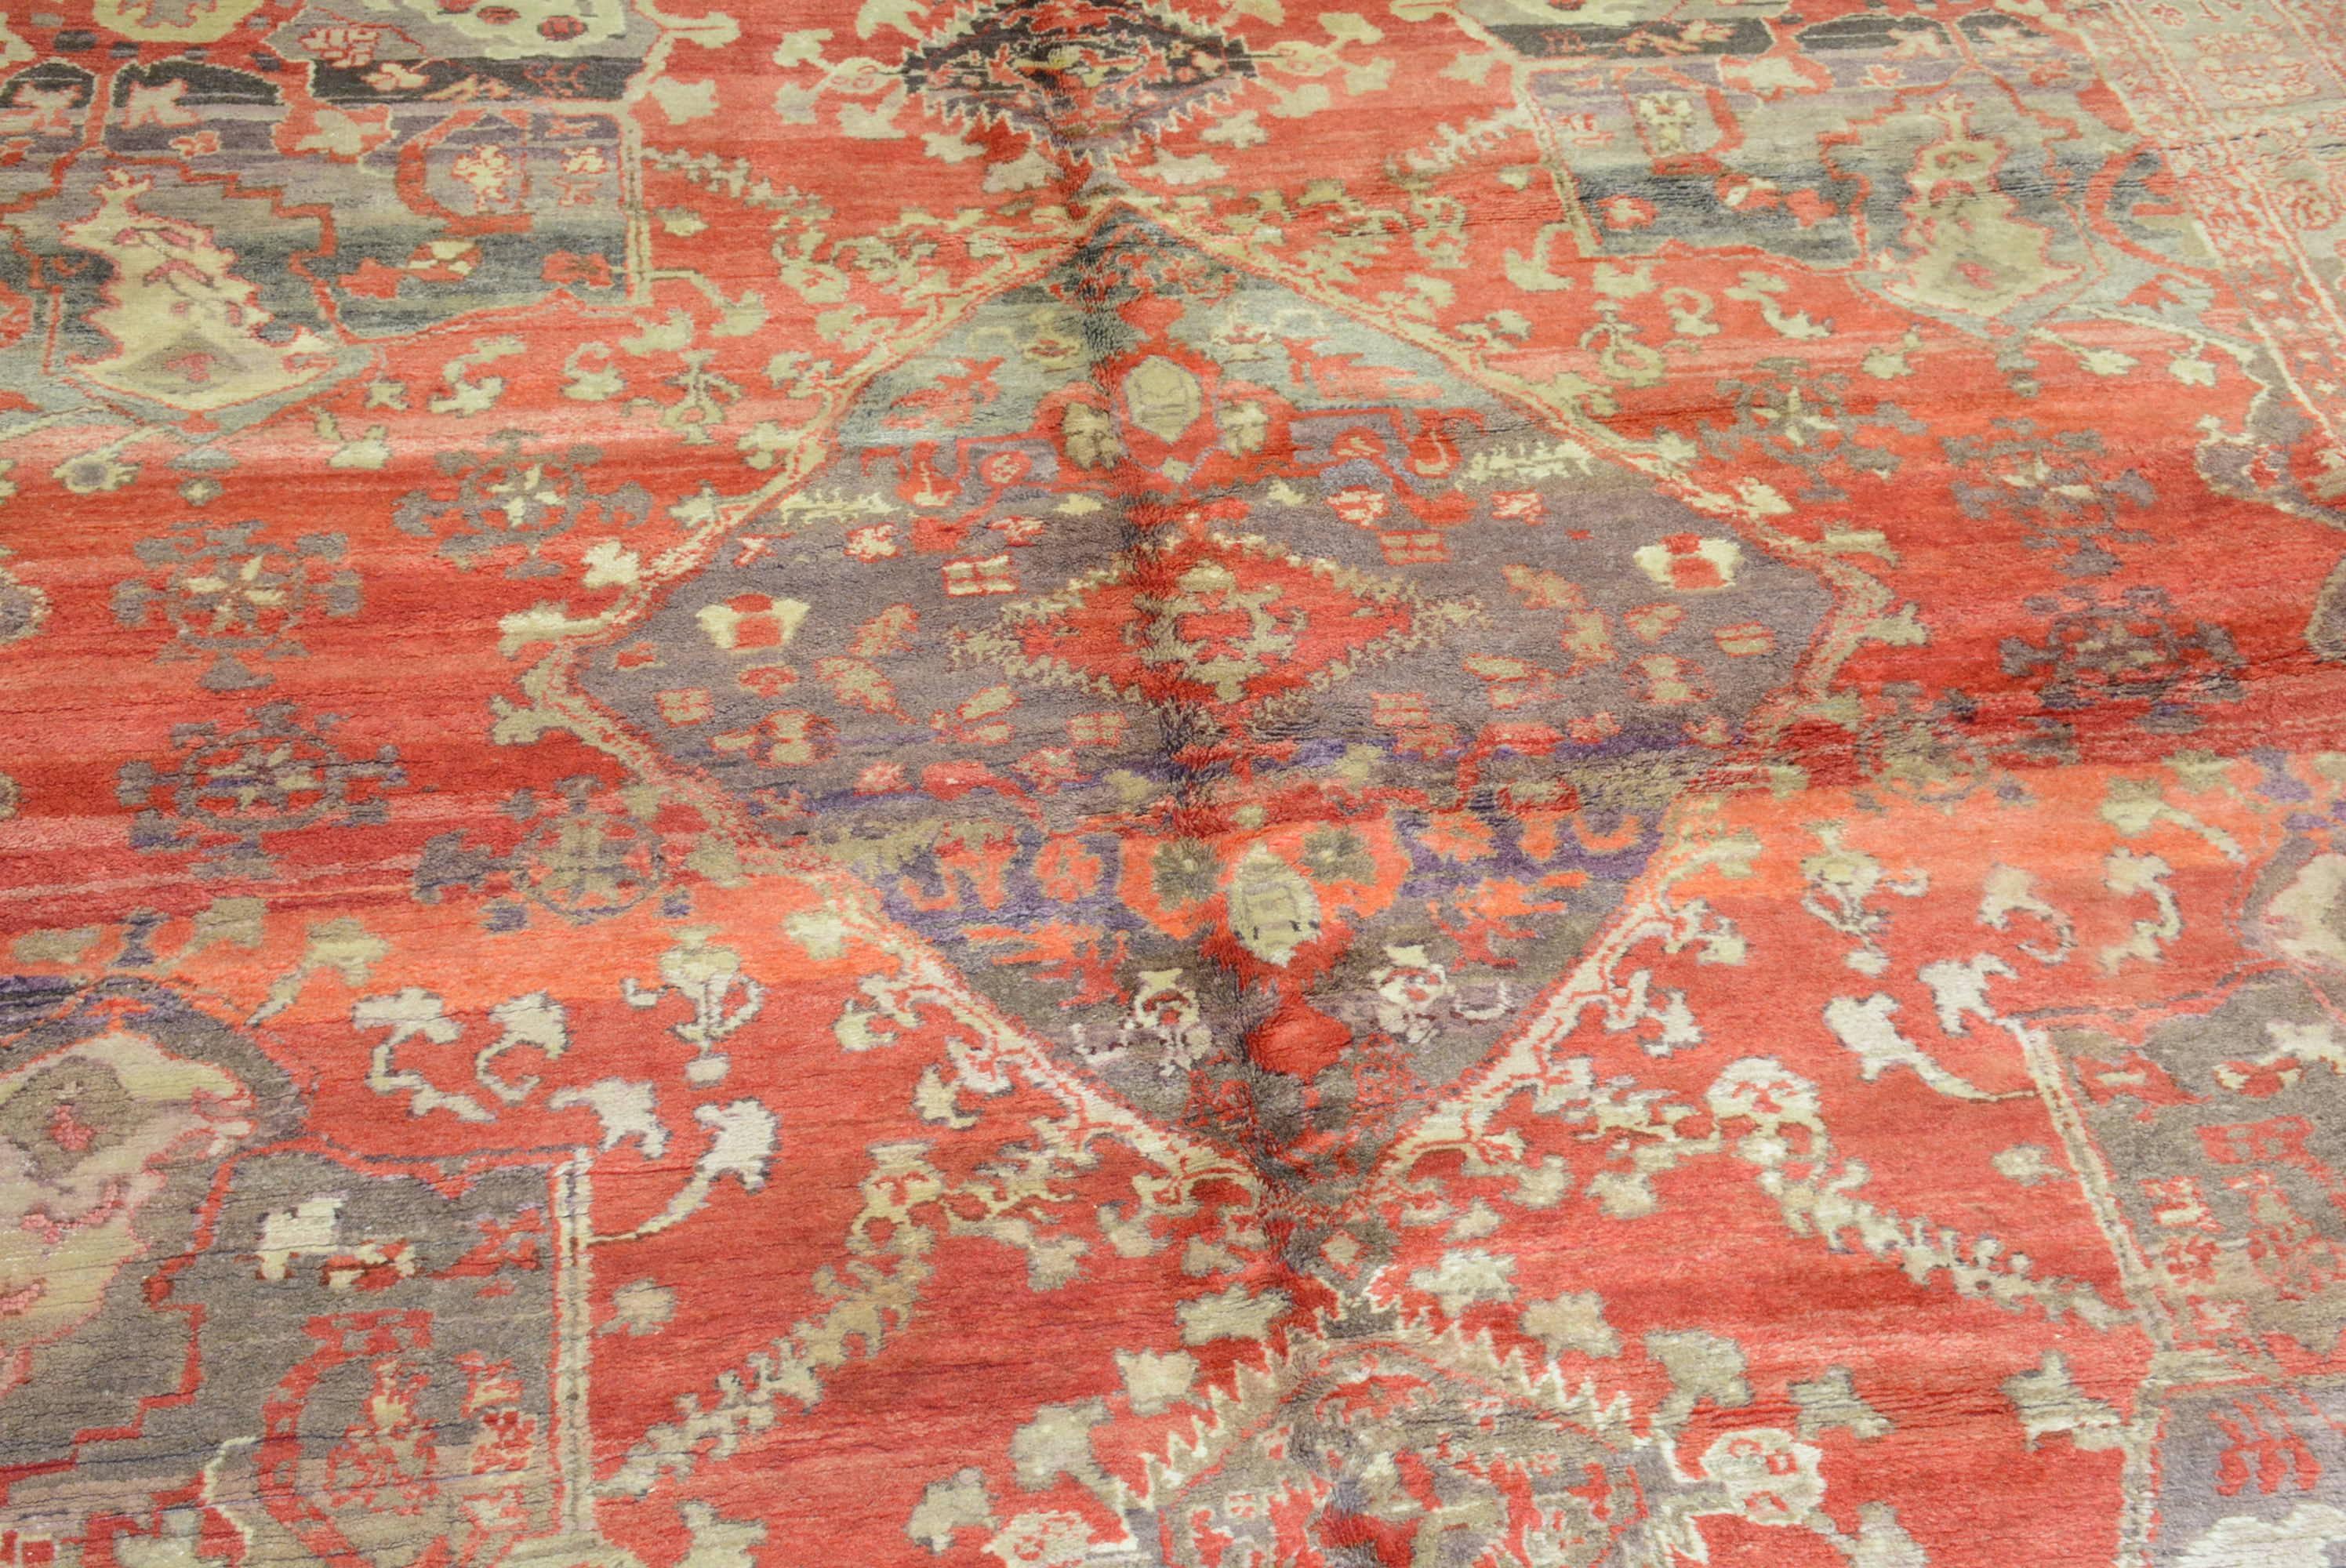 Les tapis de Khotan sont tissés dans la province de Sinkiang, dans l'ouest de la Chine, également connue sous le nom de Turkestan oriental.  Ils sont souvent appelés tapis de Samarkand, du nom de la ville d'Asie centrale où ils étaient